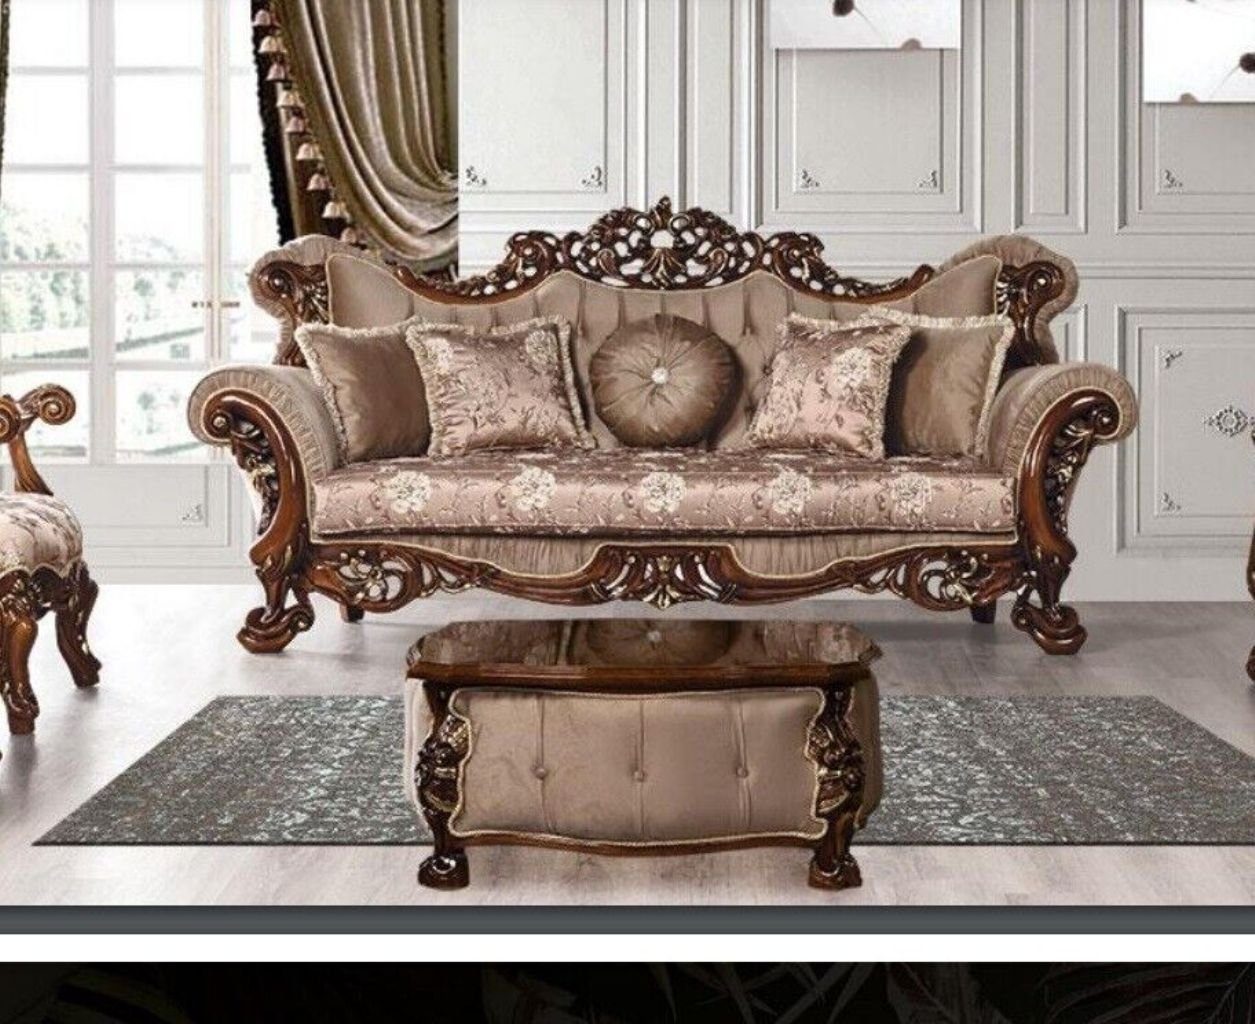 JVmoebel 3-Sitzer Sofa 3 Sitzer Klassischer Dreisitzer Sofas Stoff Textil Design Barock, 1 Teile